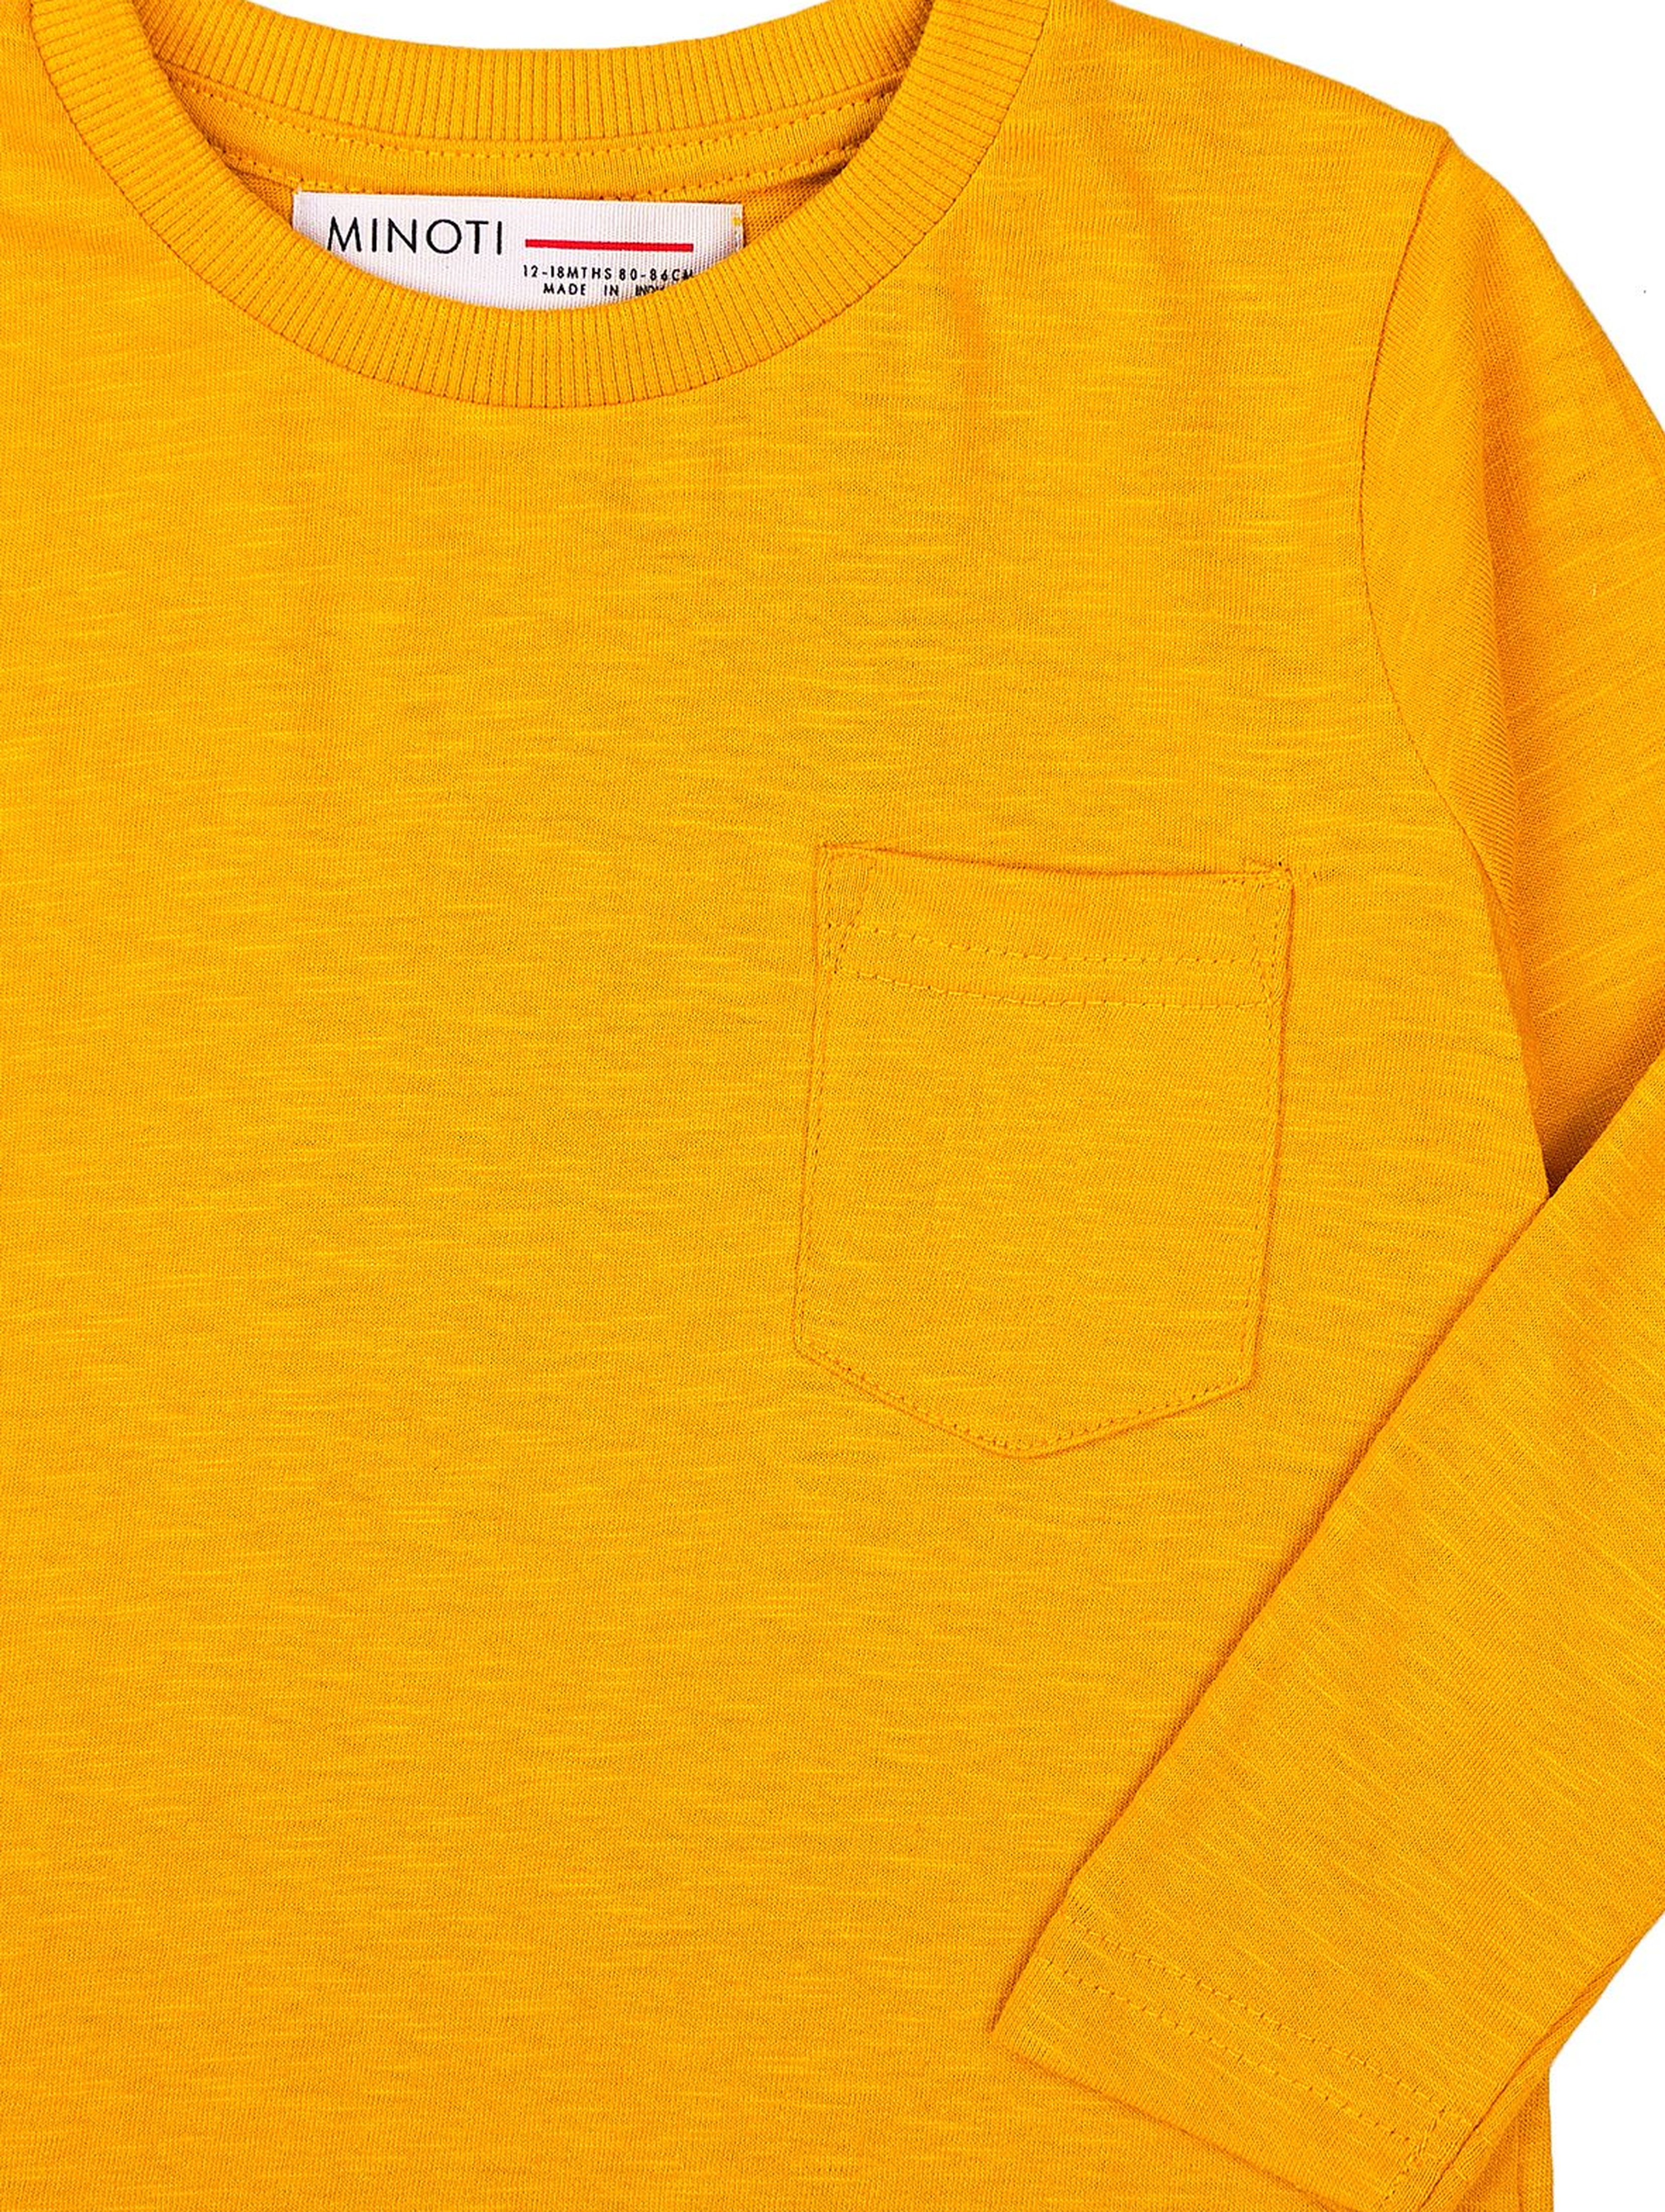 Żółta bluzka chłopięca bawełniana z kieszonką